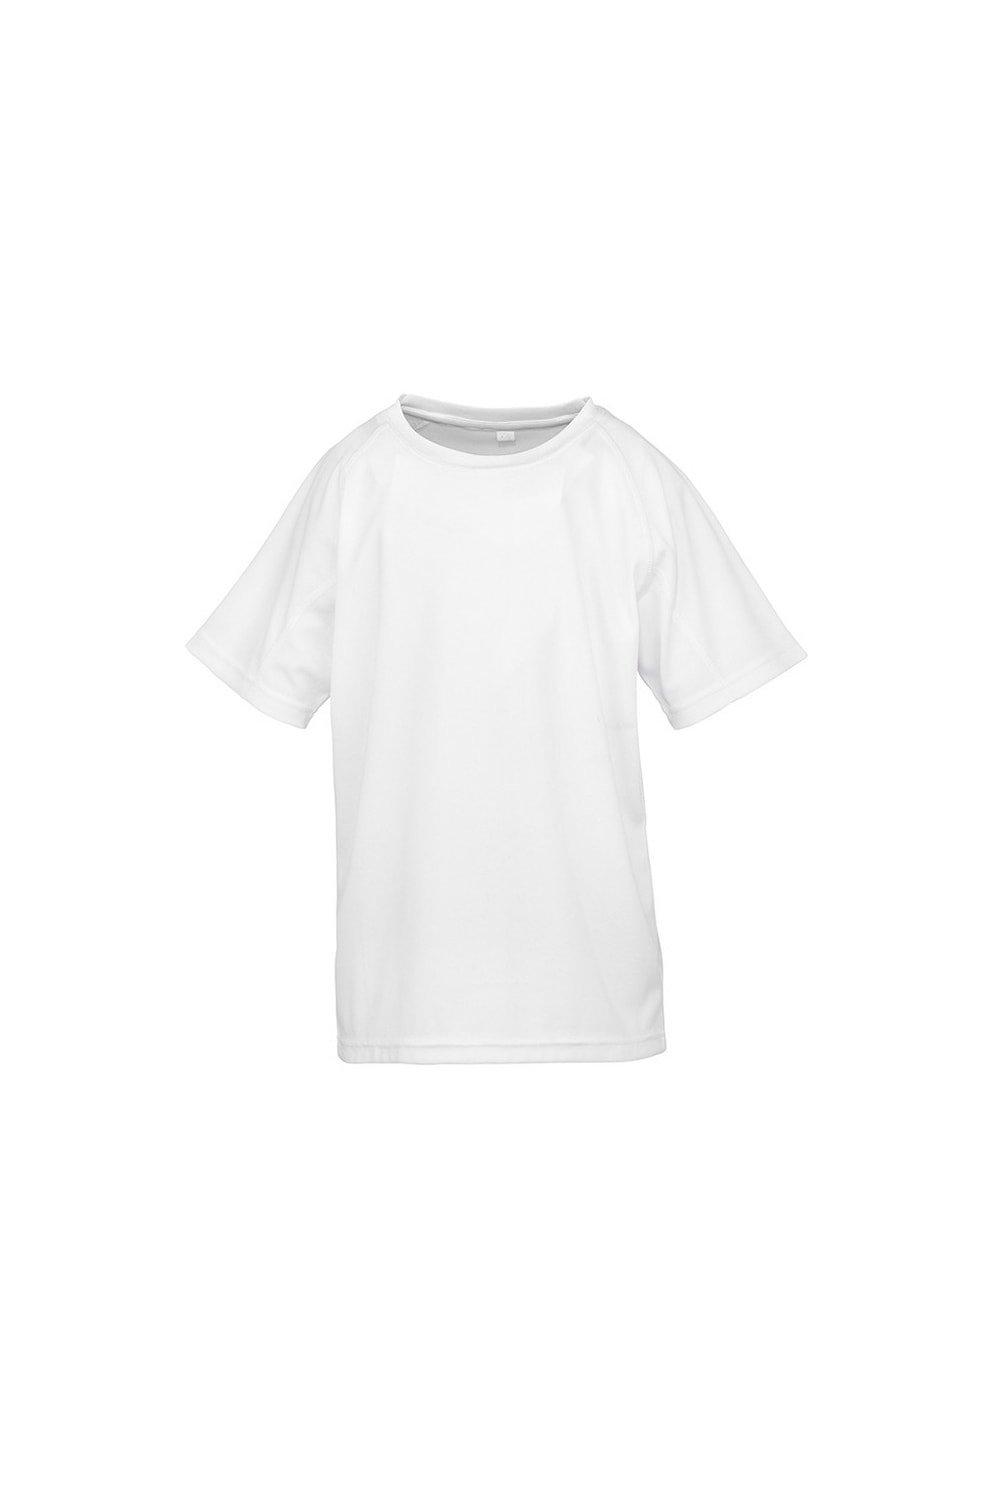 Детская футболка Impact Performance Aircool Spiro, белый женская футболка с коротким рукавом быстросохнущая дышащая облегающая футболка для гольфа